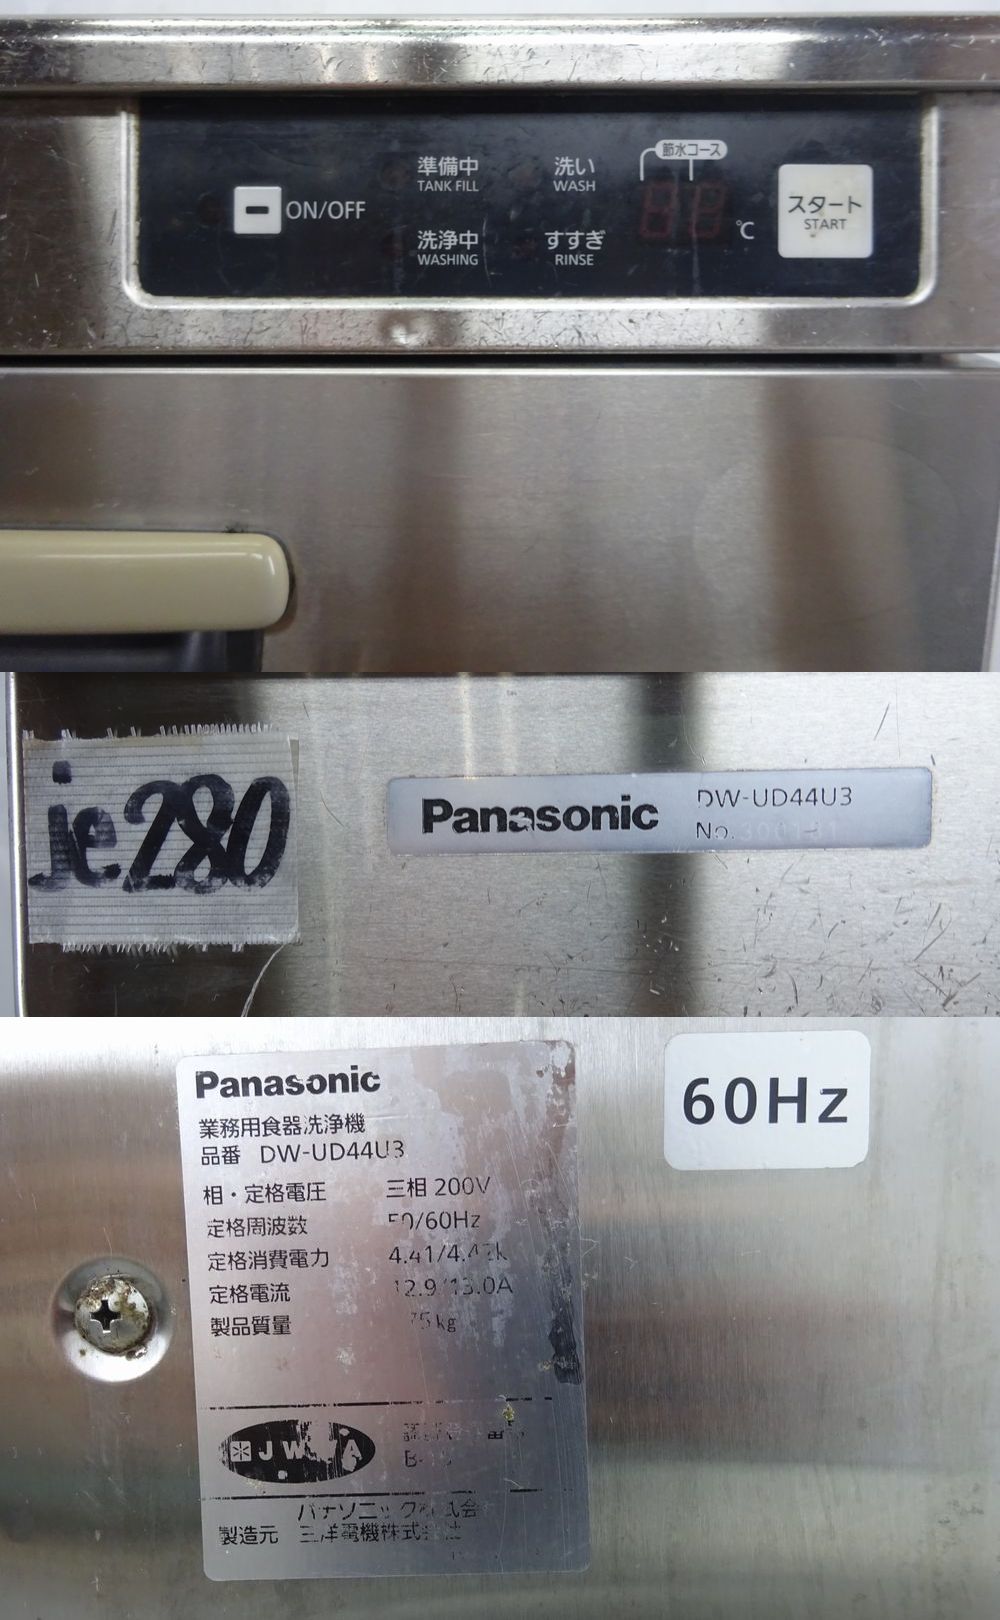 上品な パナソニック 食器洗浄機 アンダーカウンター DW-UD44U3 600×600×850mm 3相200V 60hz 2016年製 中古  業務用 厨房 店舗